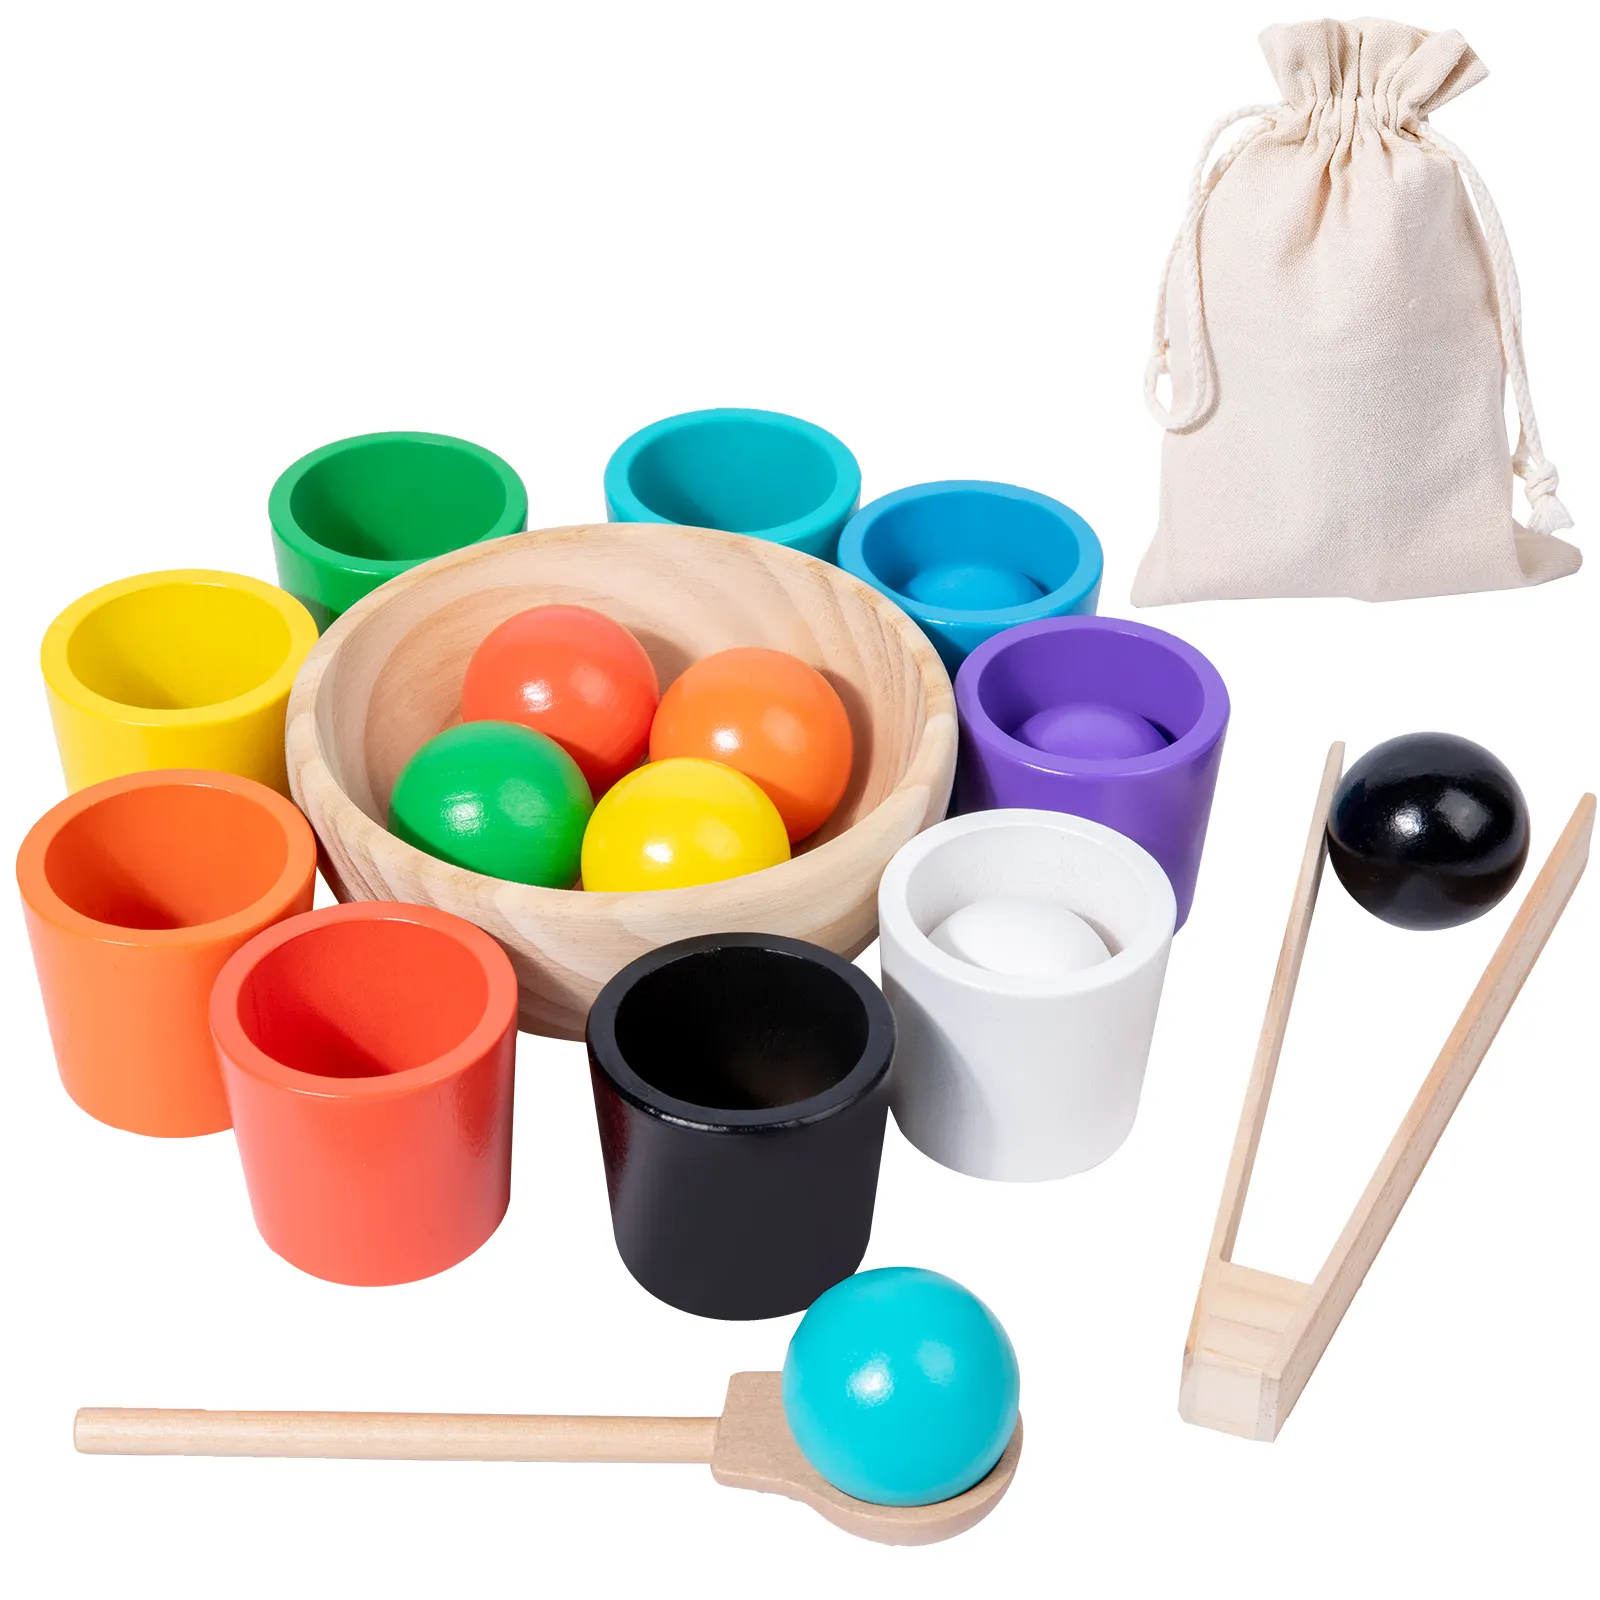 لعبة تعليمية مونتيسوري لتشكيل الألوان في الكرات والأكواب لعبة تطابق الألوان للأطفال نشاط تطابق الألوان